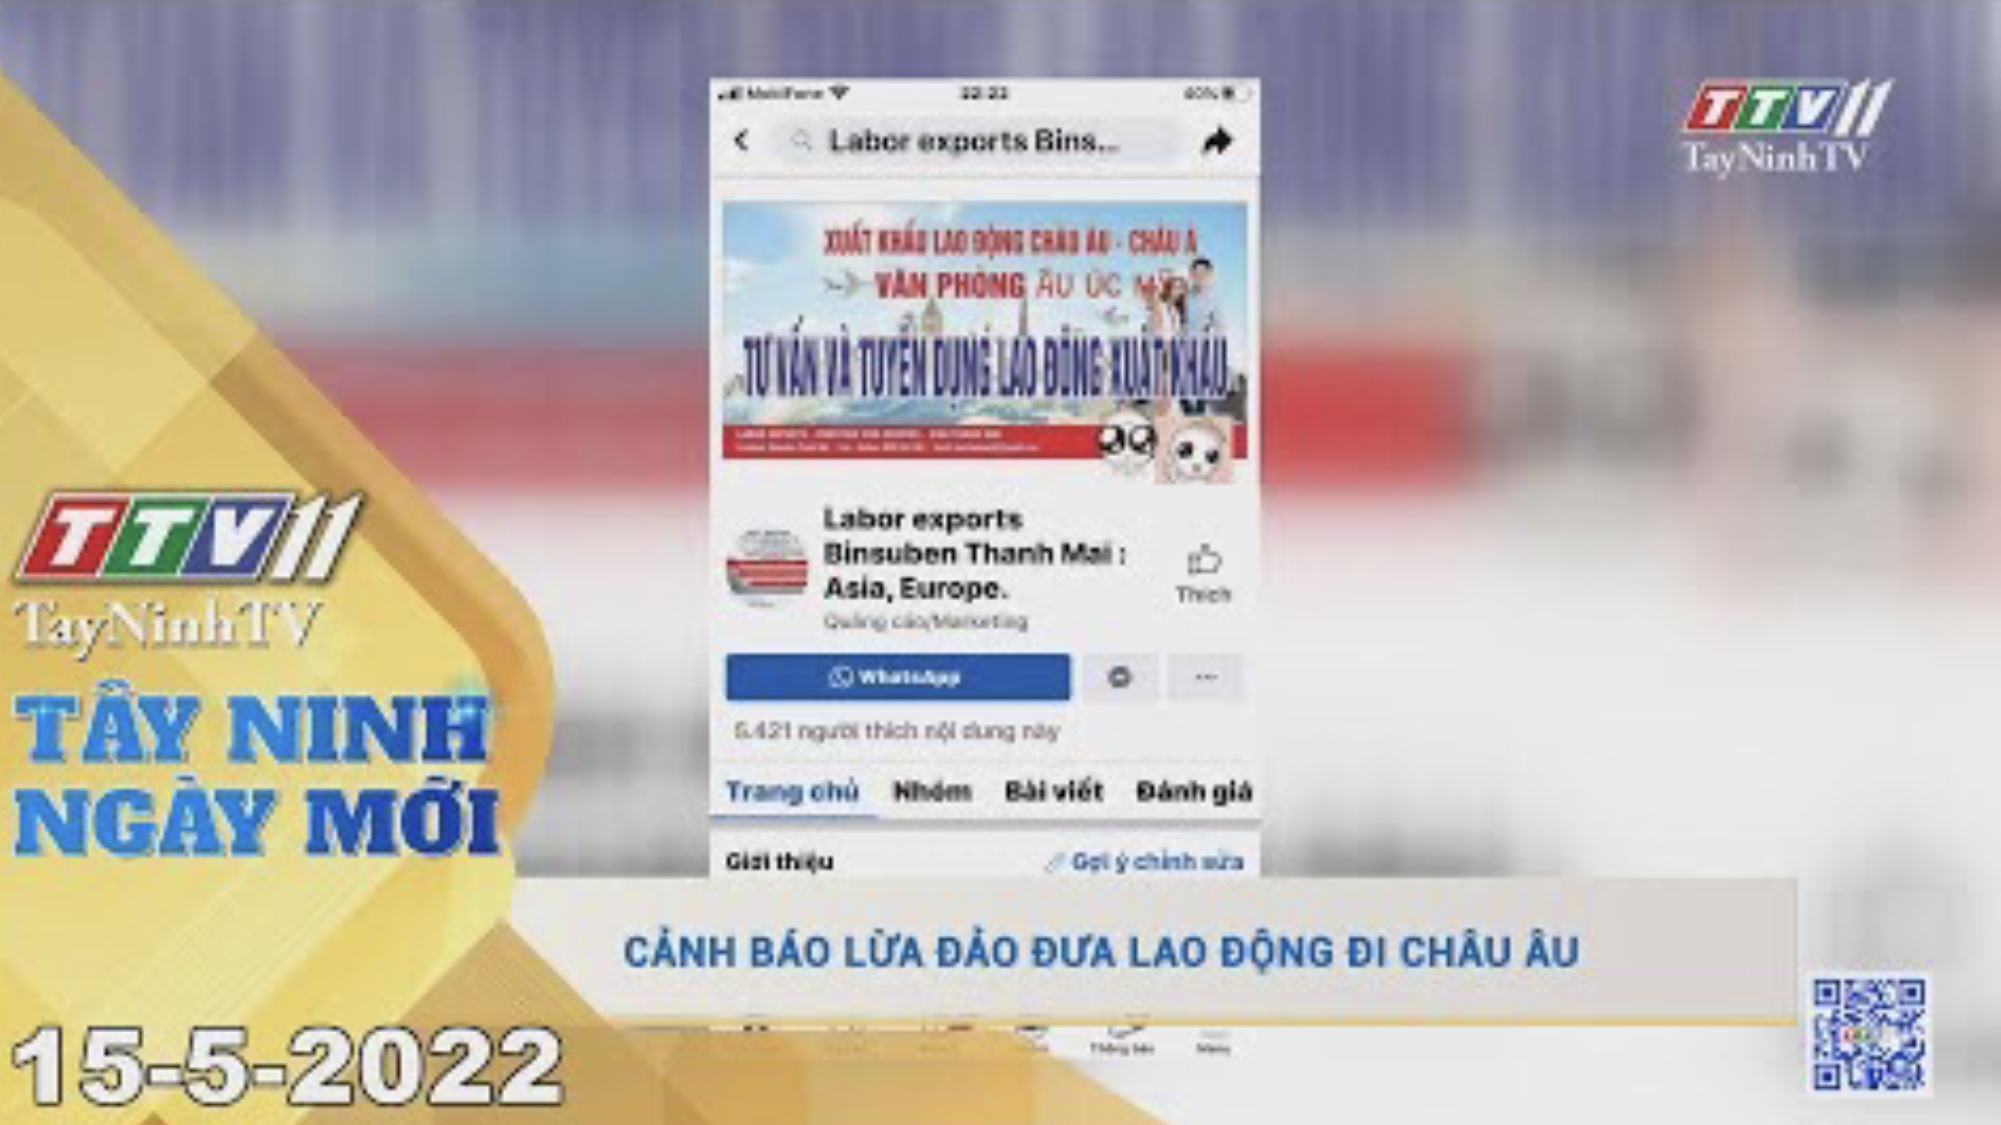 Tây Ninh ngày mới 15-5-2022 | Tin tức hôm nay | TayNinhTV